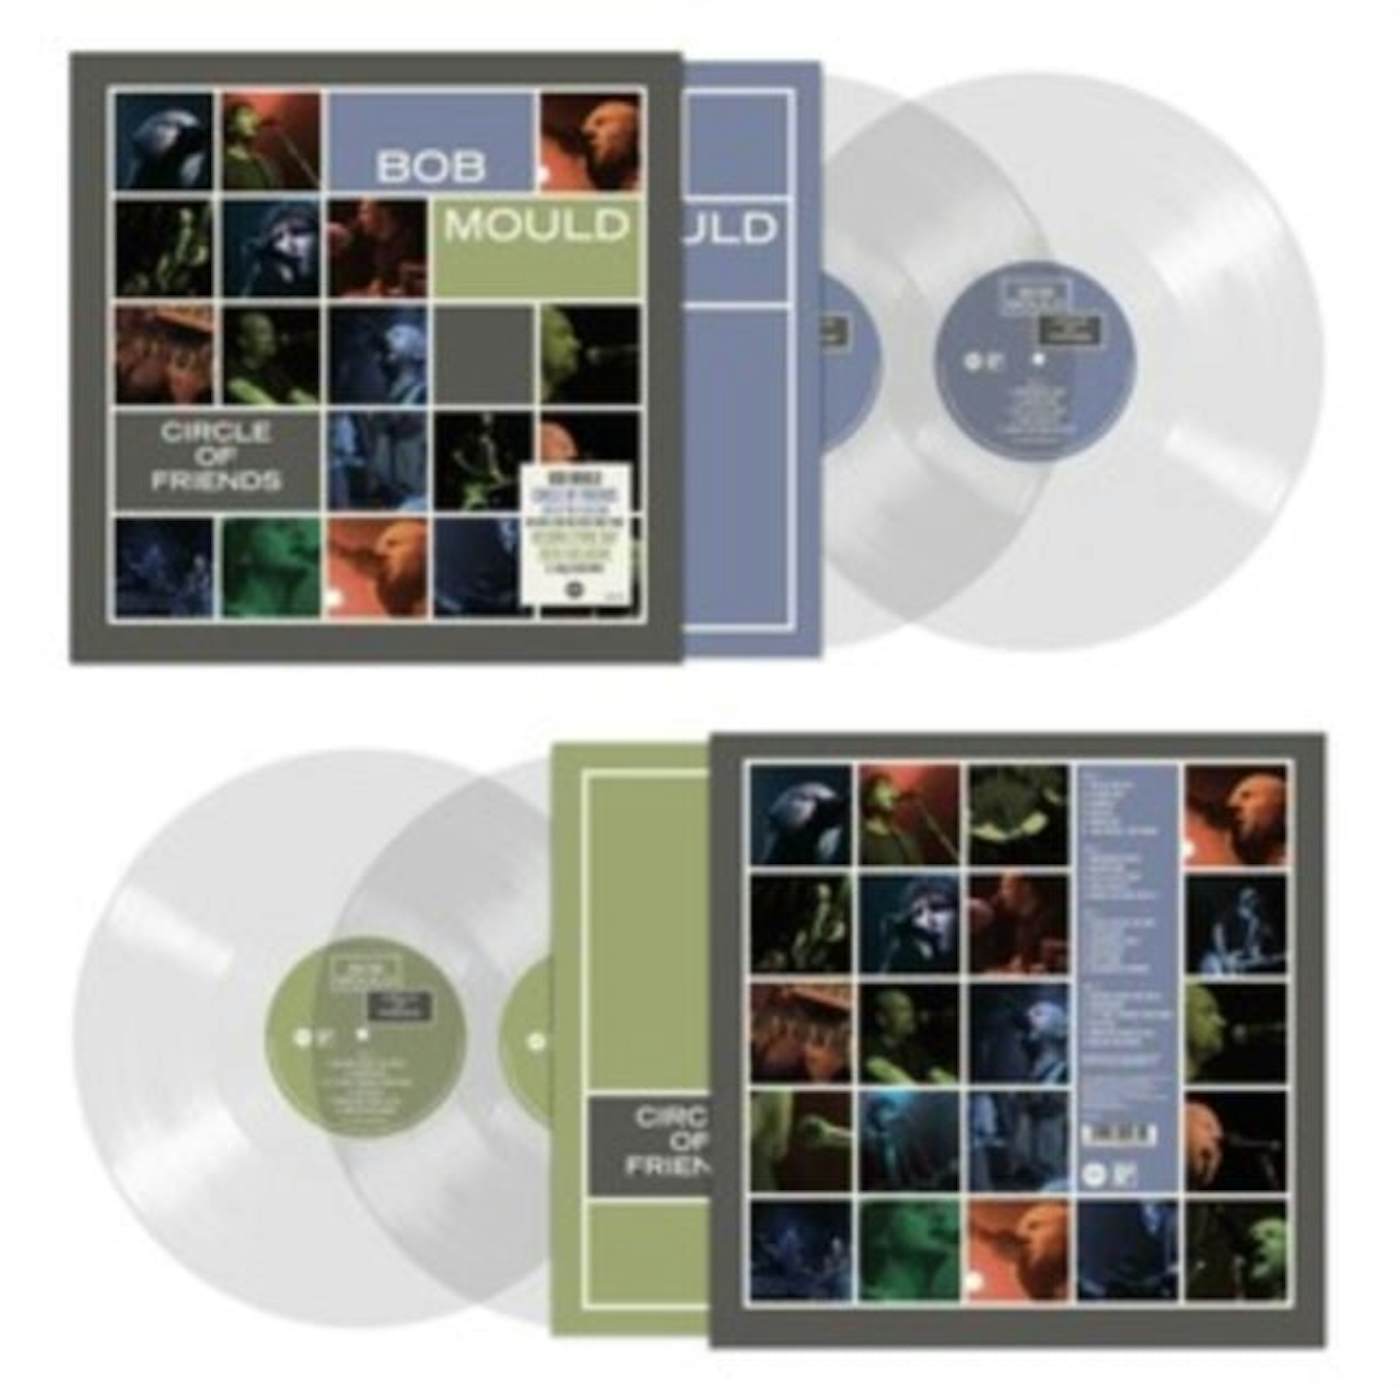 Bob Mould LP Vinyl Record - Circle Of Friends (Clear Vinyl) (RSD 20. 20. )